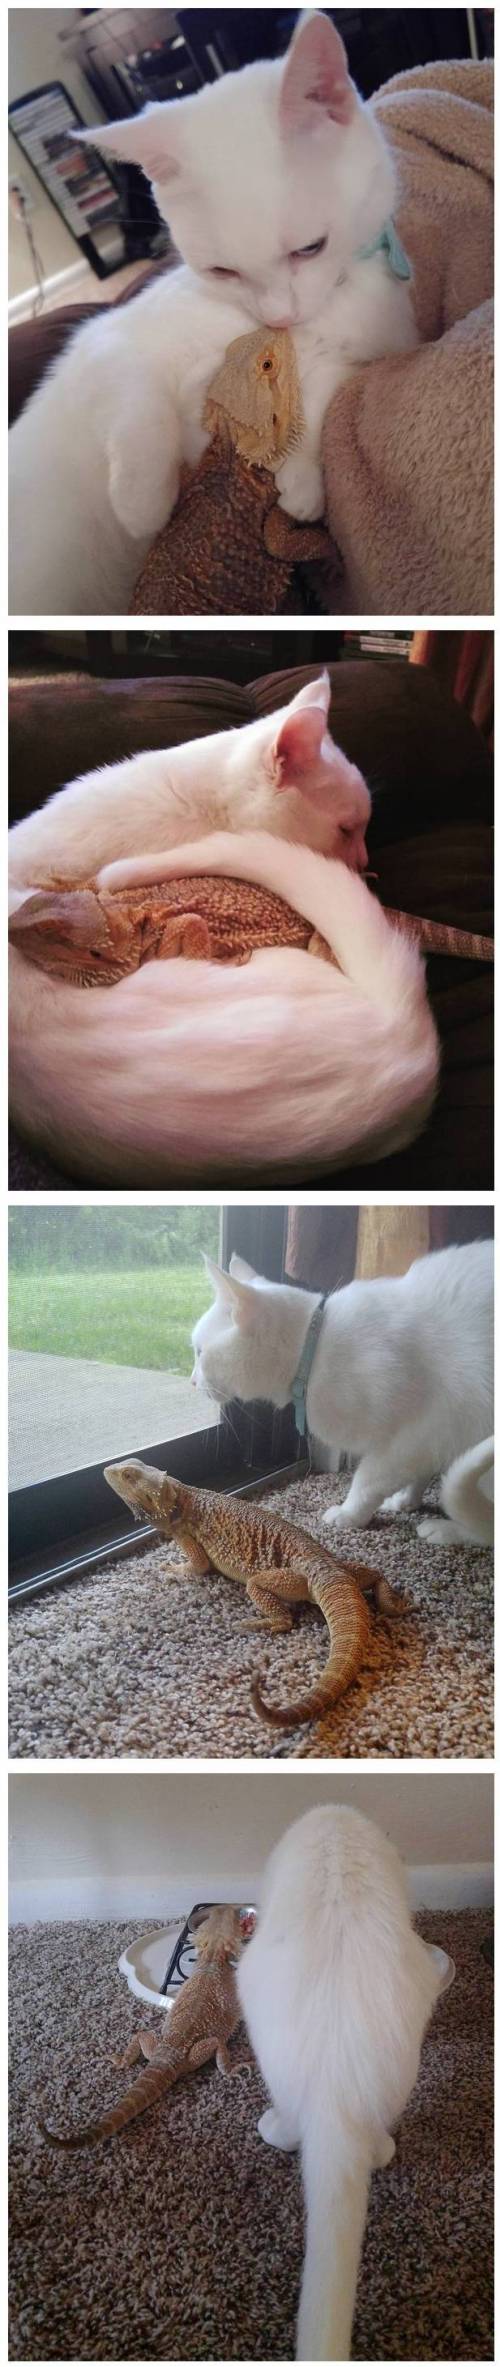 고양이와 도마뱀의 기묘한 동거 생활.jpg